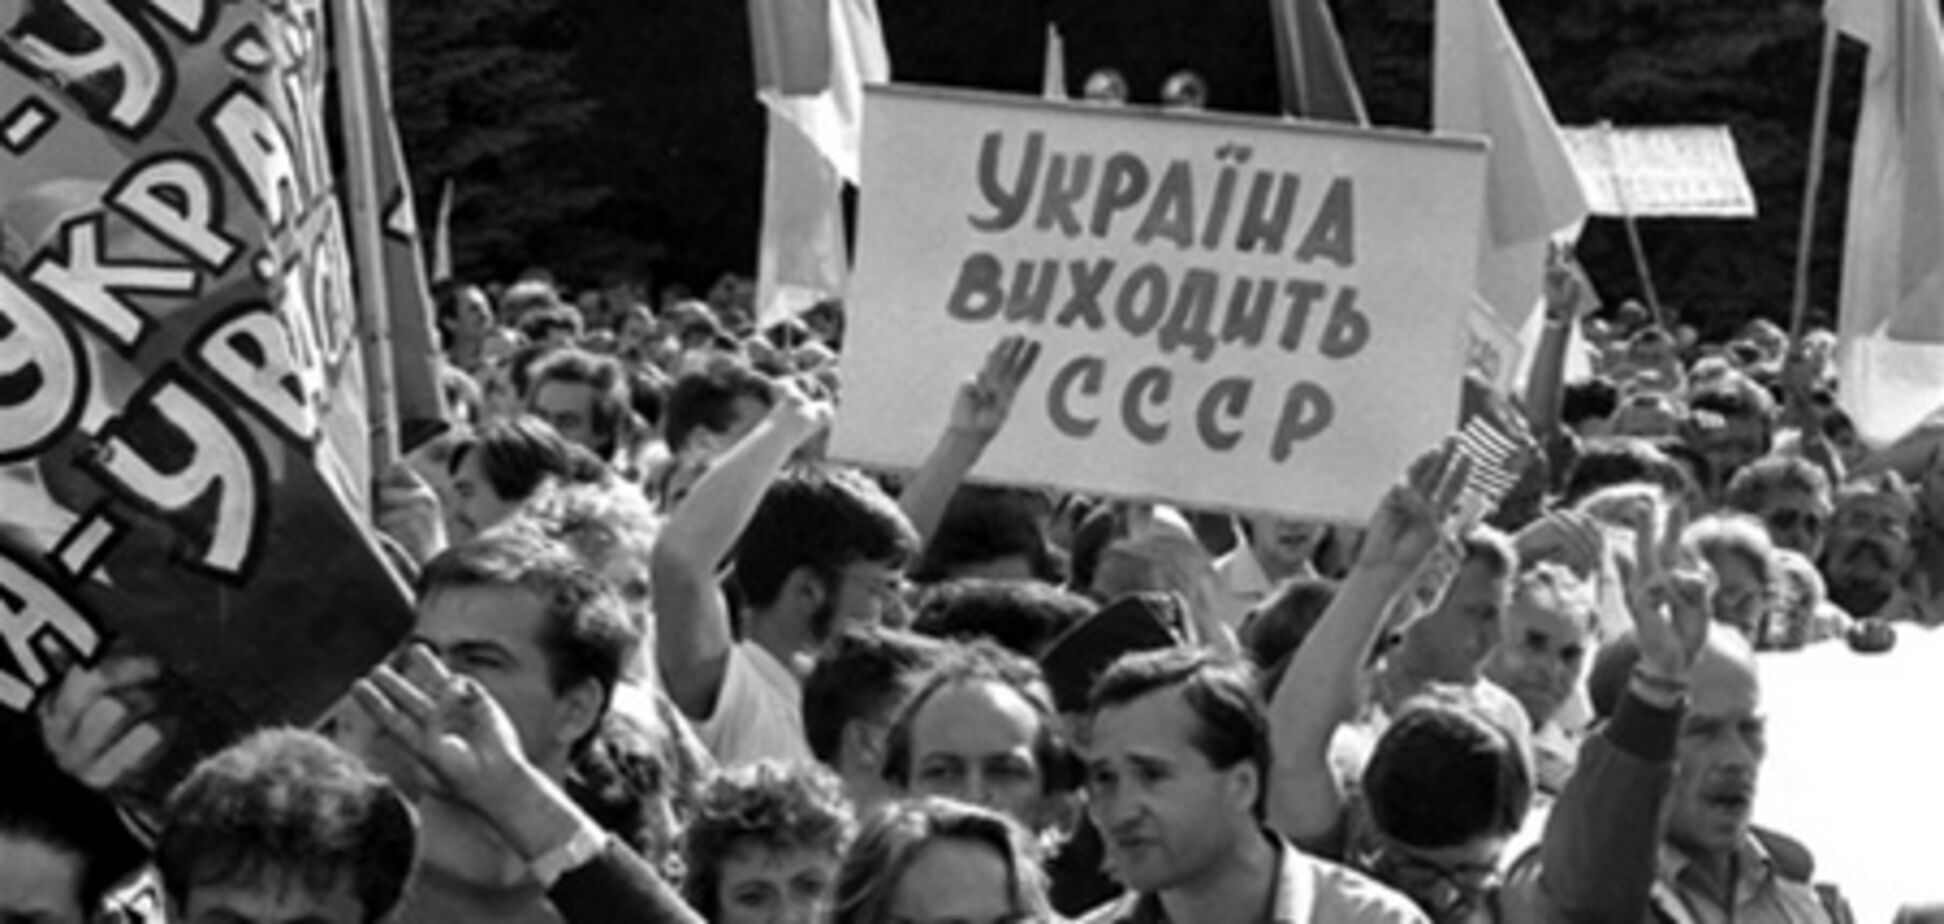 Кравчук: референдум – це історичний день утворення незалежної держави